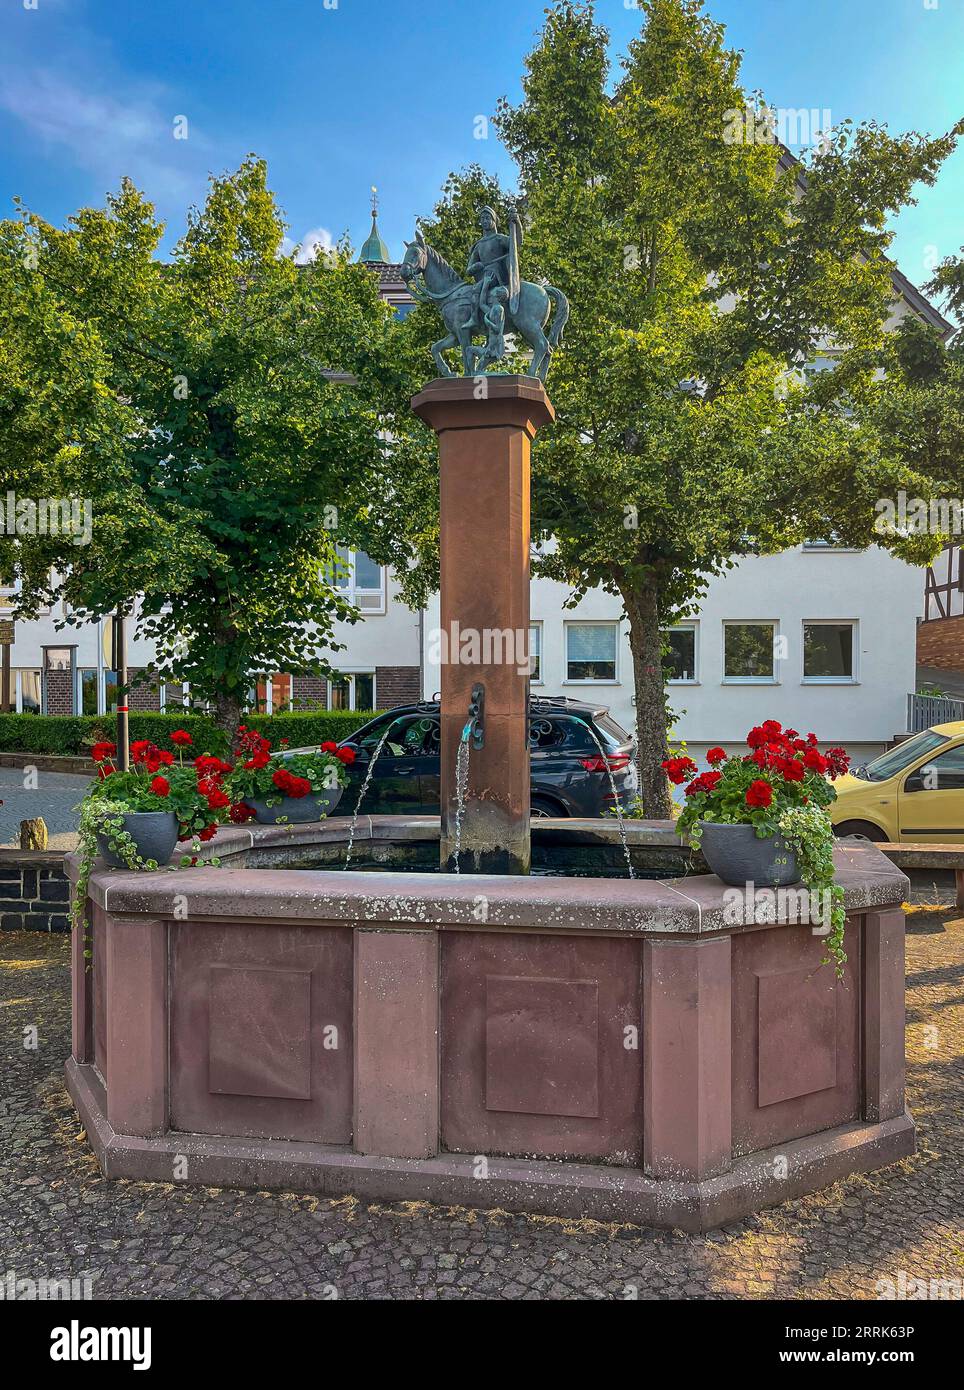 Amöneburg, Hesse, Allemagne - fontaine sur la place du marché dans la vieille ville. Amöneburg est une petite ville dans le quartier central de Hesse de Marburg-Biedenkopf. Il est situé sur la haute montagne de 365 m Amöneburg avec le château Amöneburg au sommet. Banque D'Images